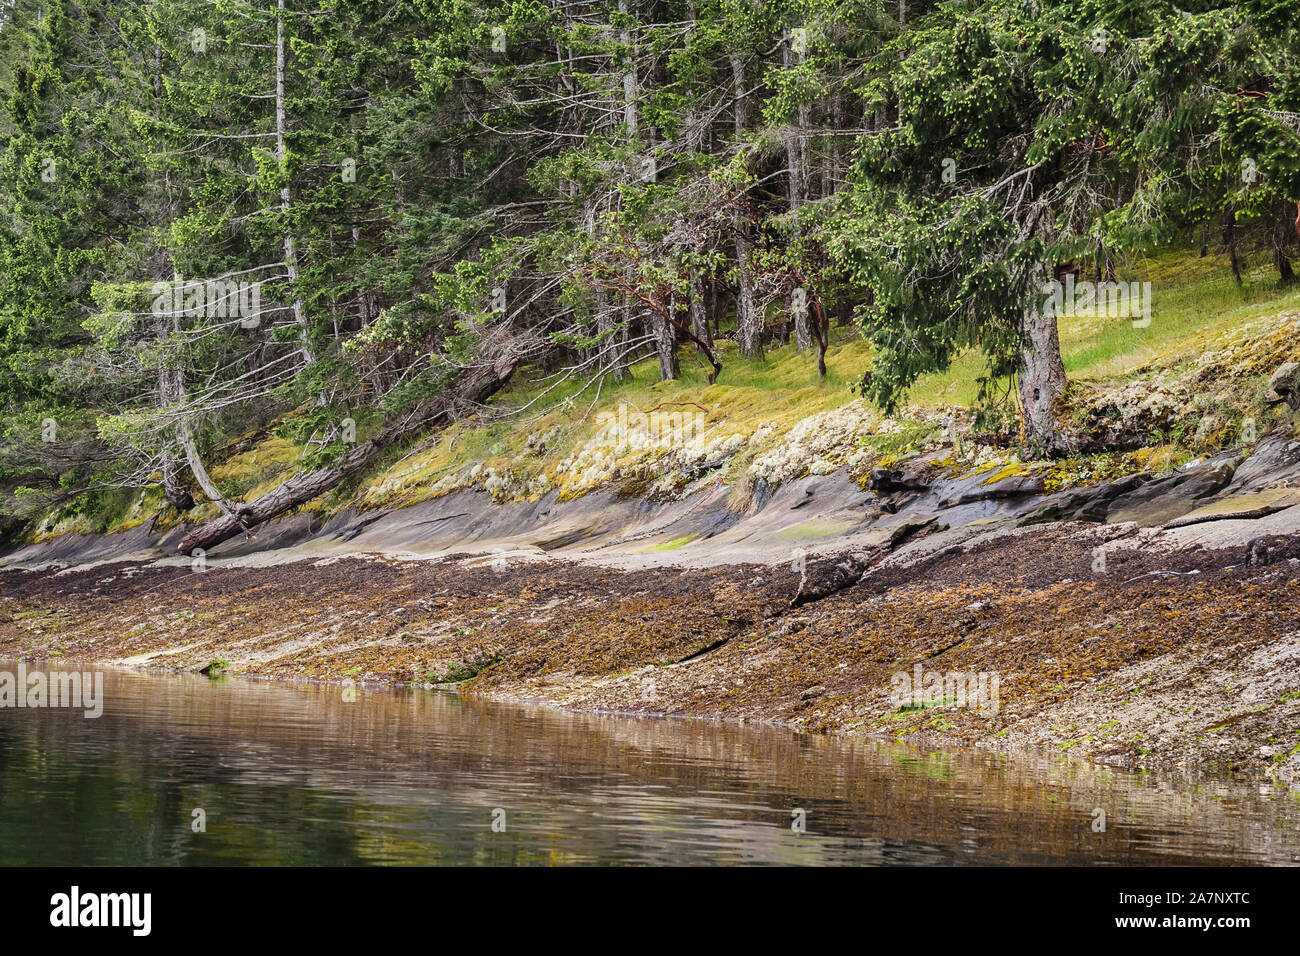 Gedämpft, erdigen Farben entlang einer Küstenlinie bei Ebbe, mit Algen, Sandstein, Moose, Flechten und Nadelbäume (Gulf Islands, British Columbia). Stockfoto